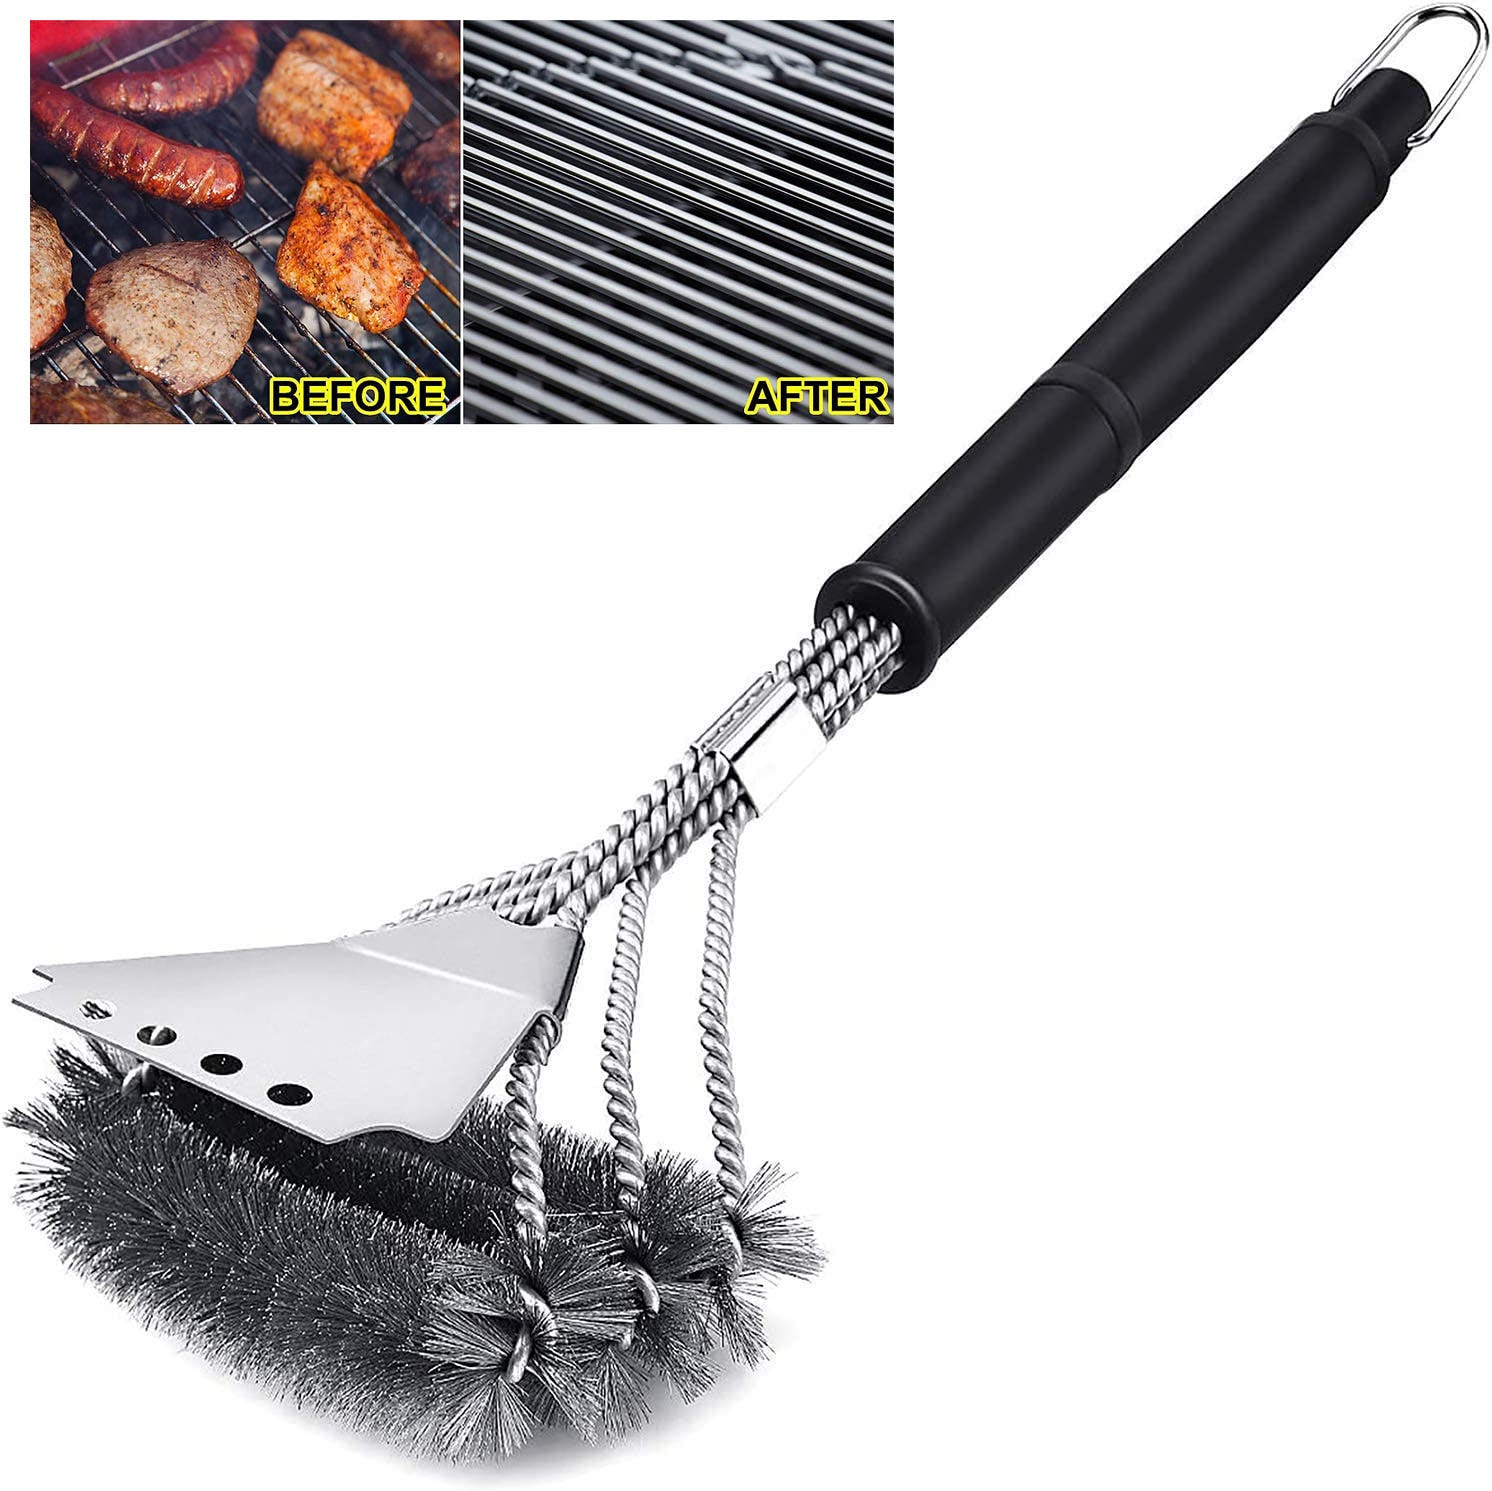 Brosse à barbecue, brosse de nettoyage de barbecue 3 en 1 avec grattoir,  poils en acier inoxydable, design horizontal, plus grande surface de  grattage